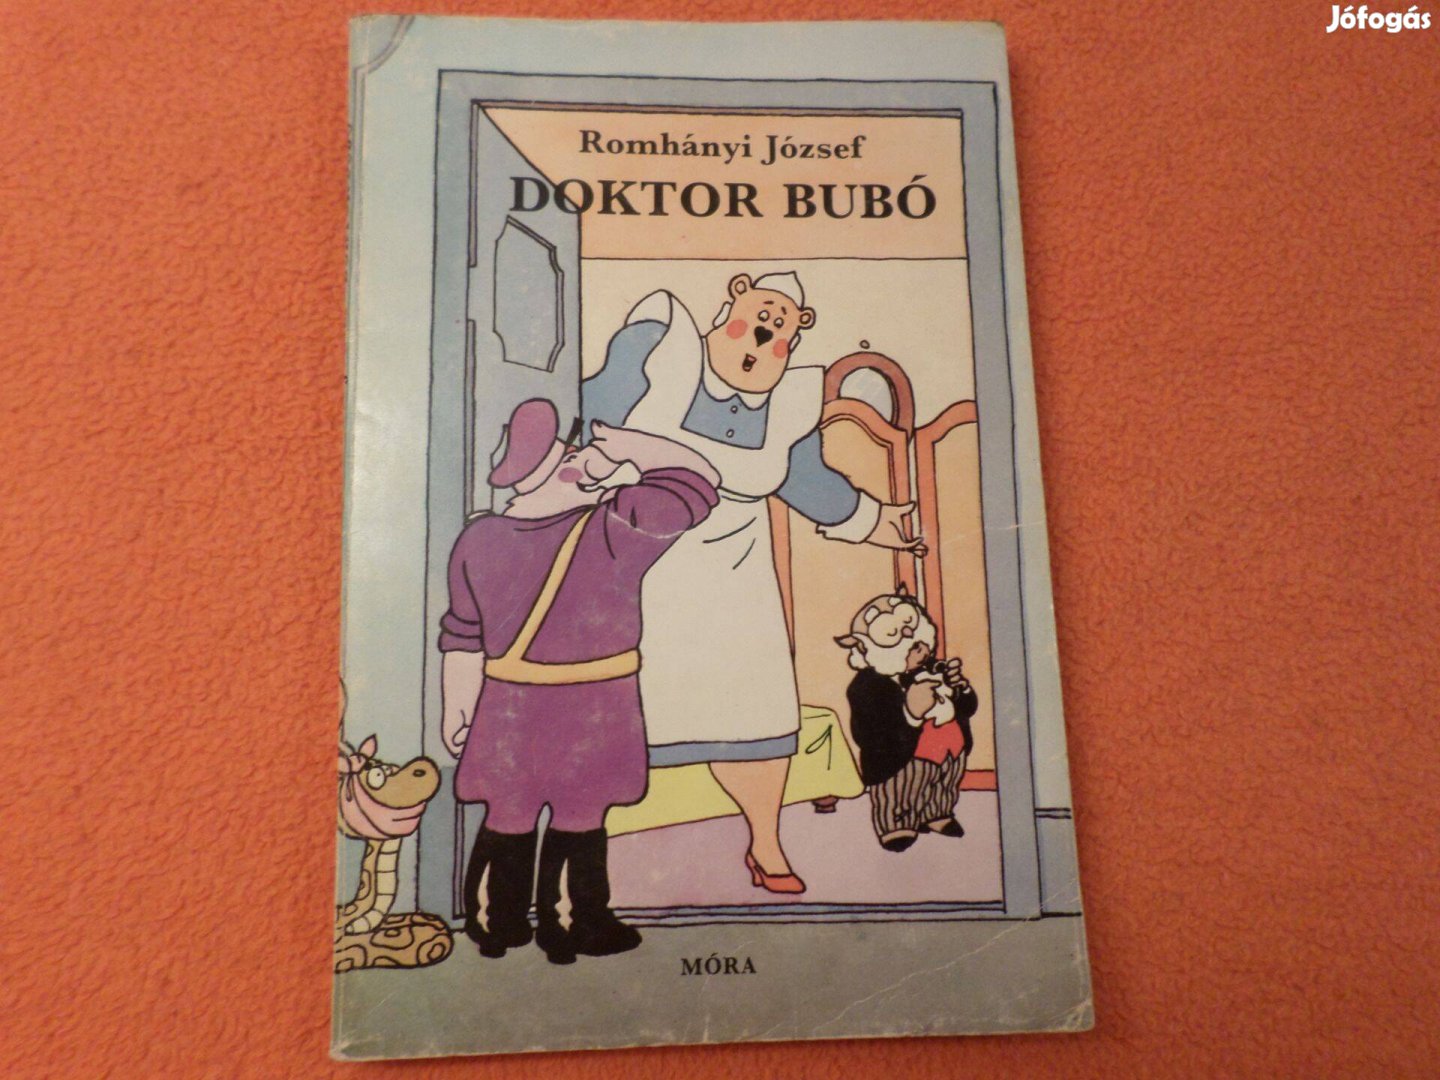 Retro! Romhányi József Doktor Bubó, 1981 Gyermekkönyv, meséskönyv